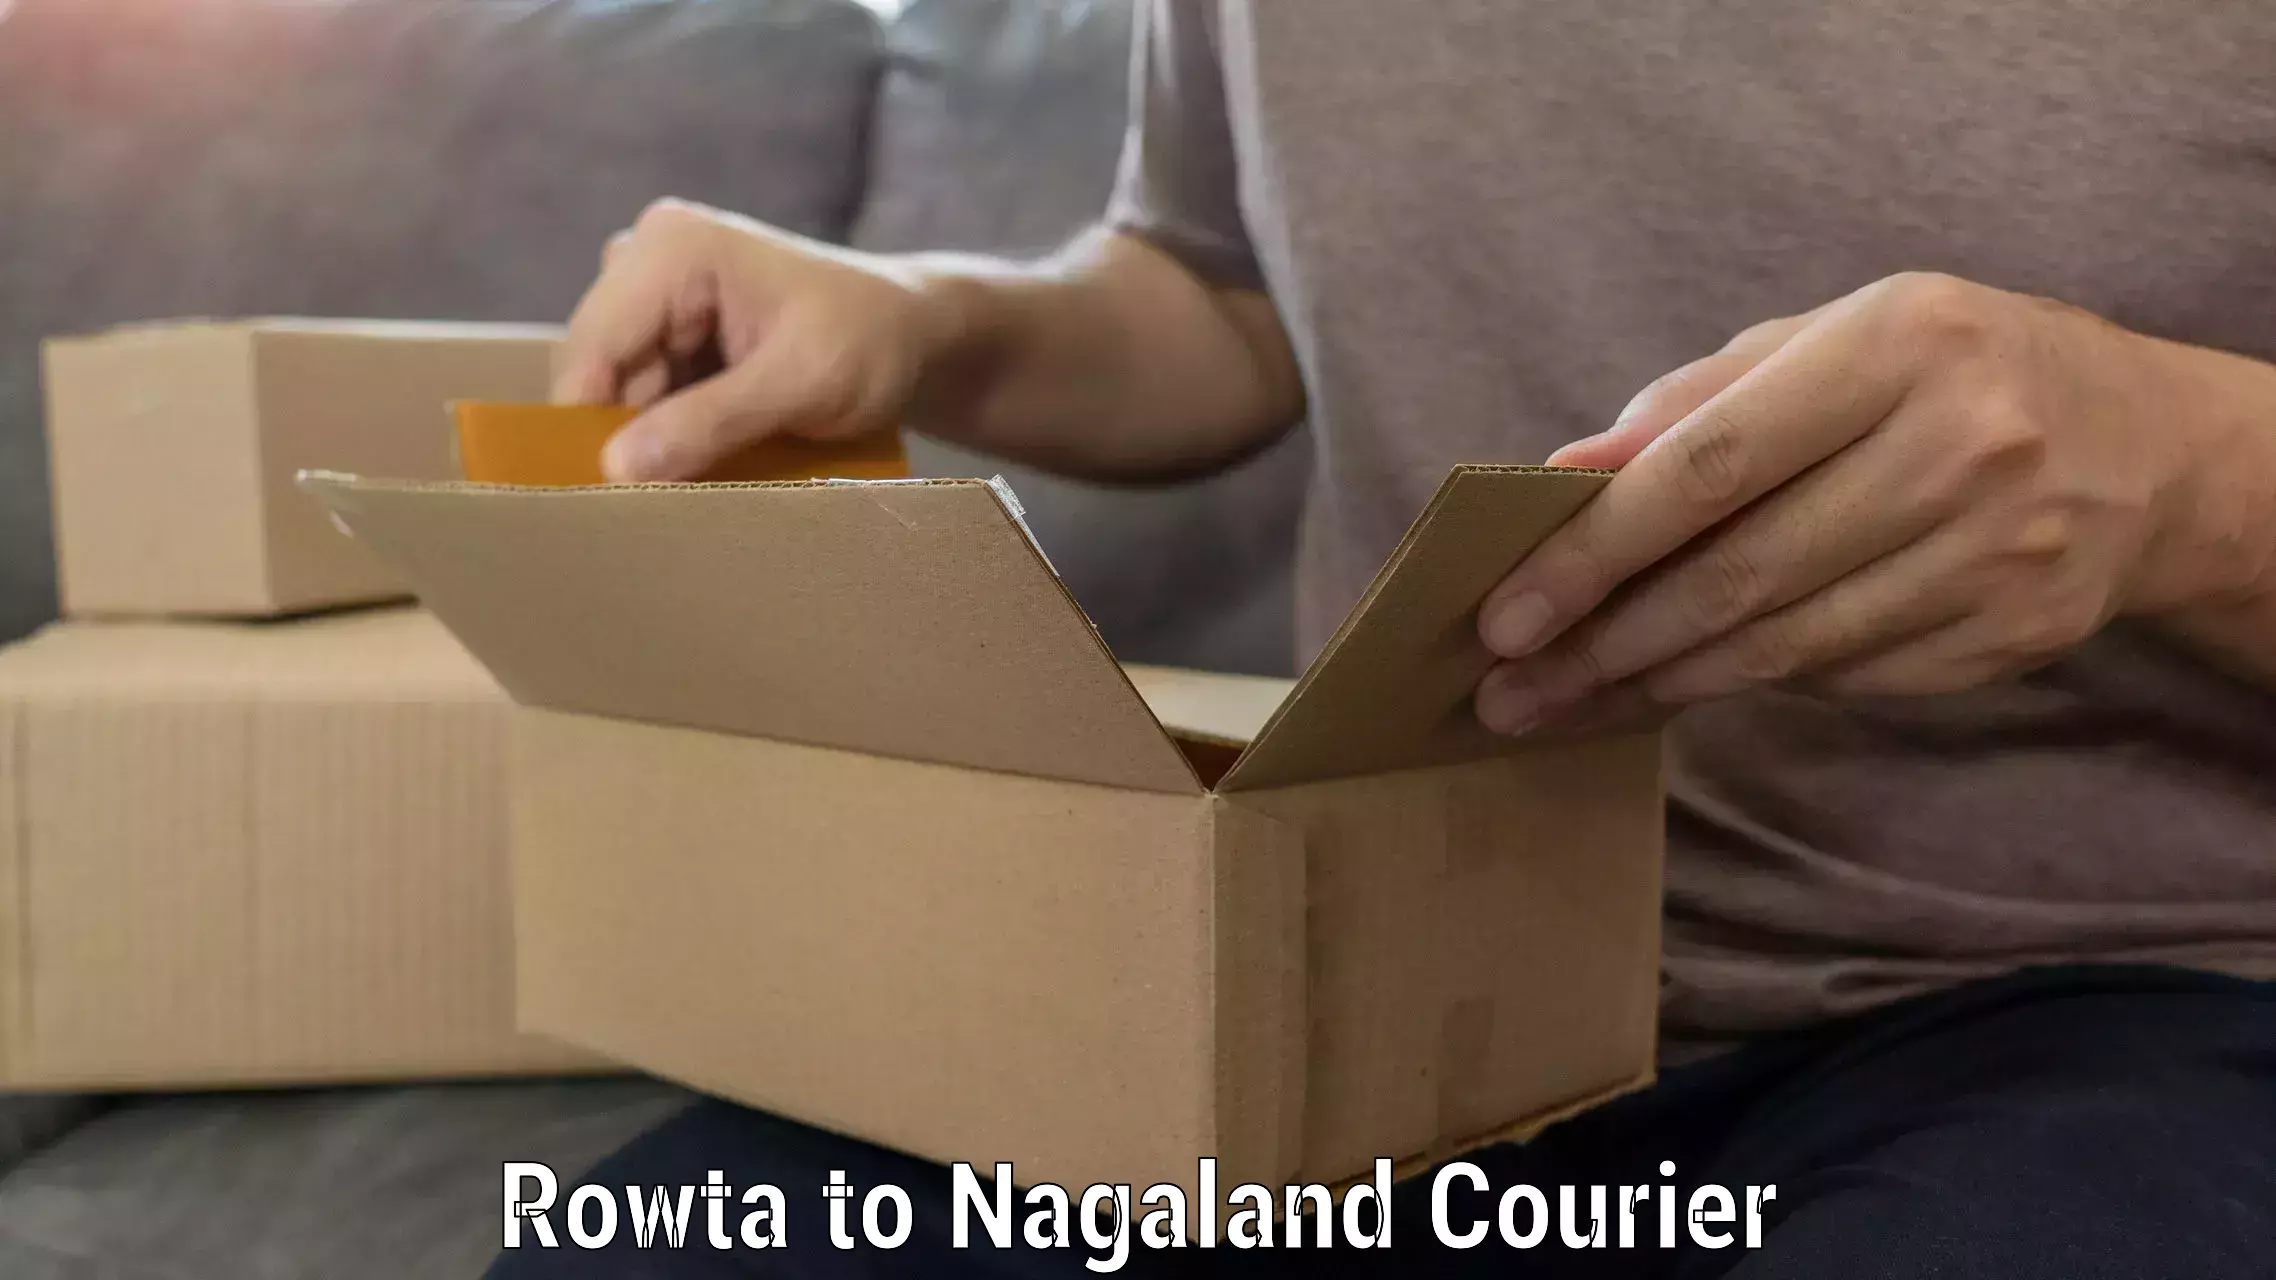 Efficient moving company Rowta to Nagaland